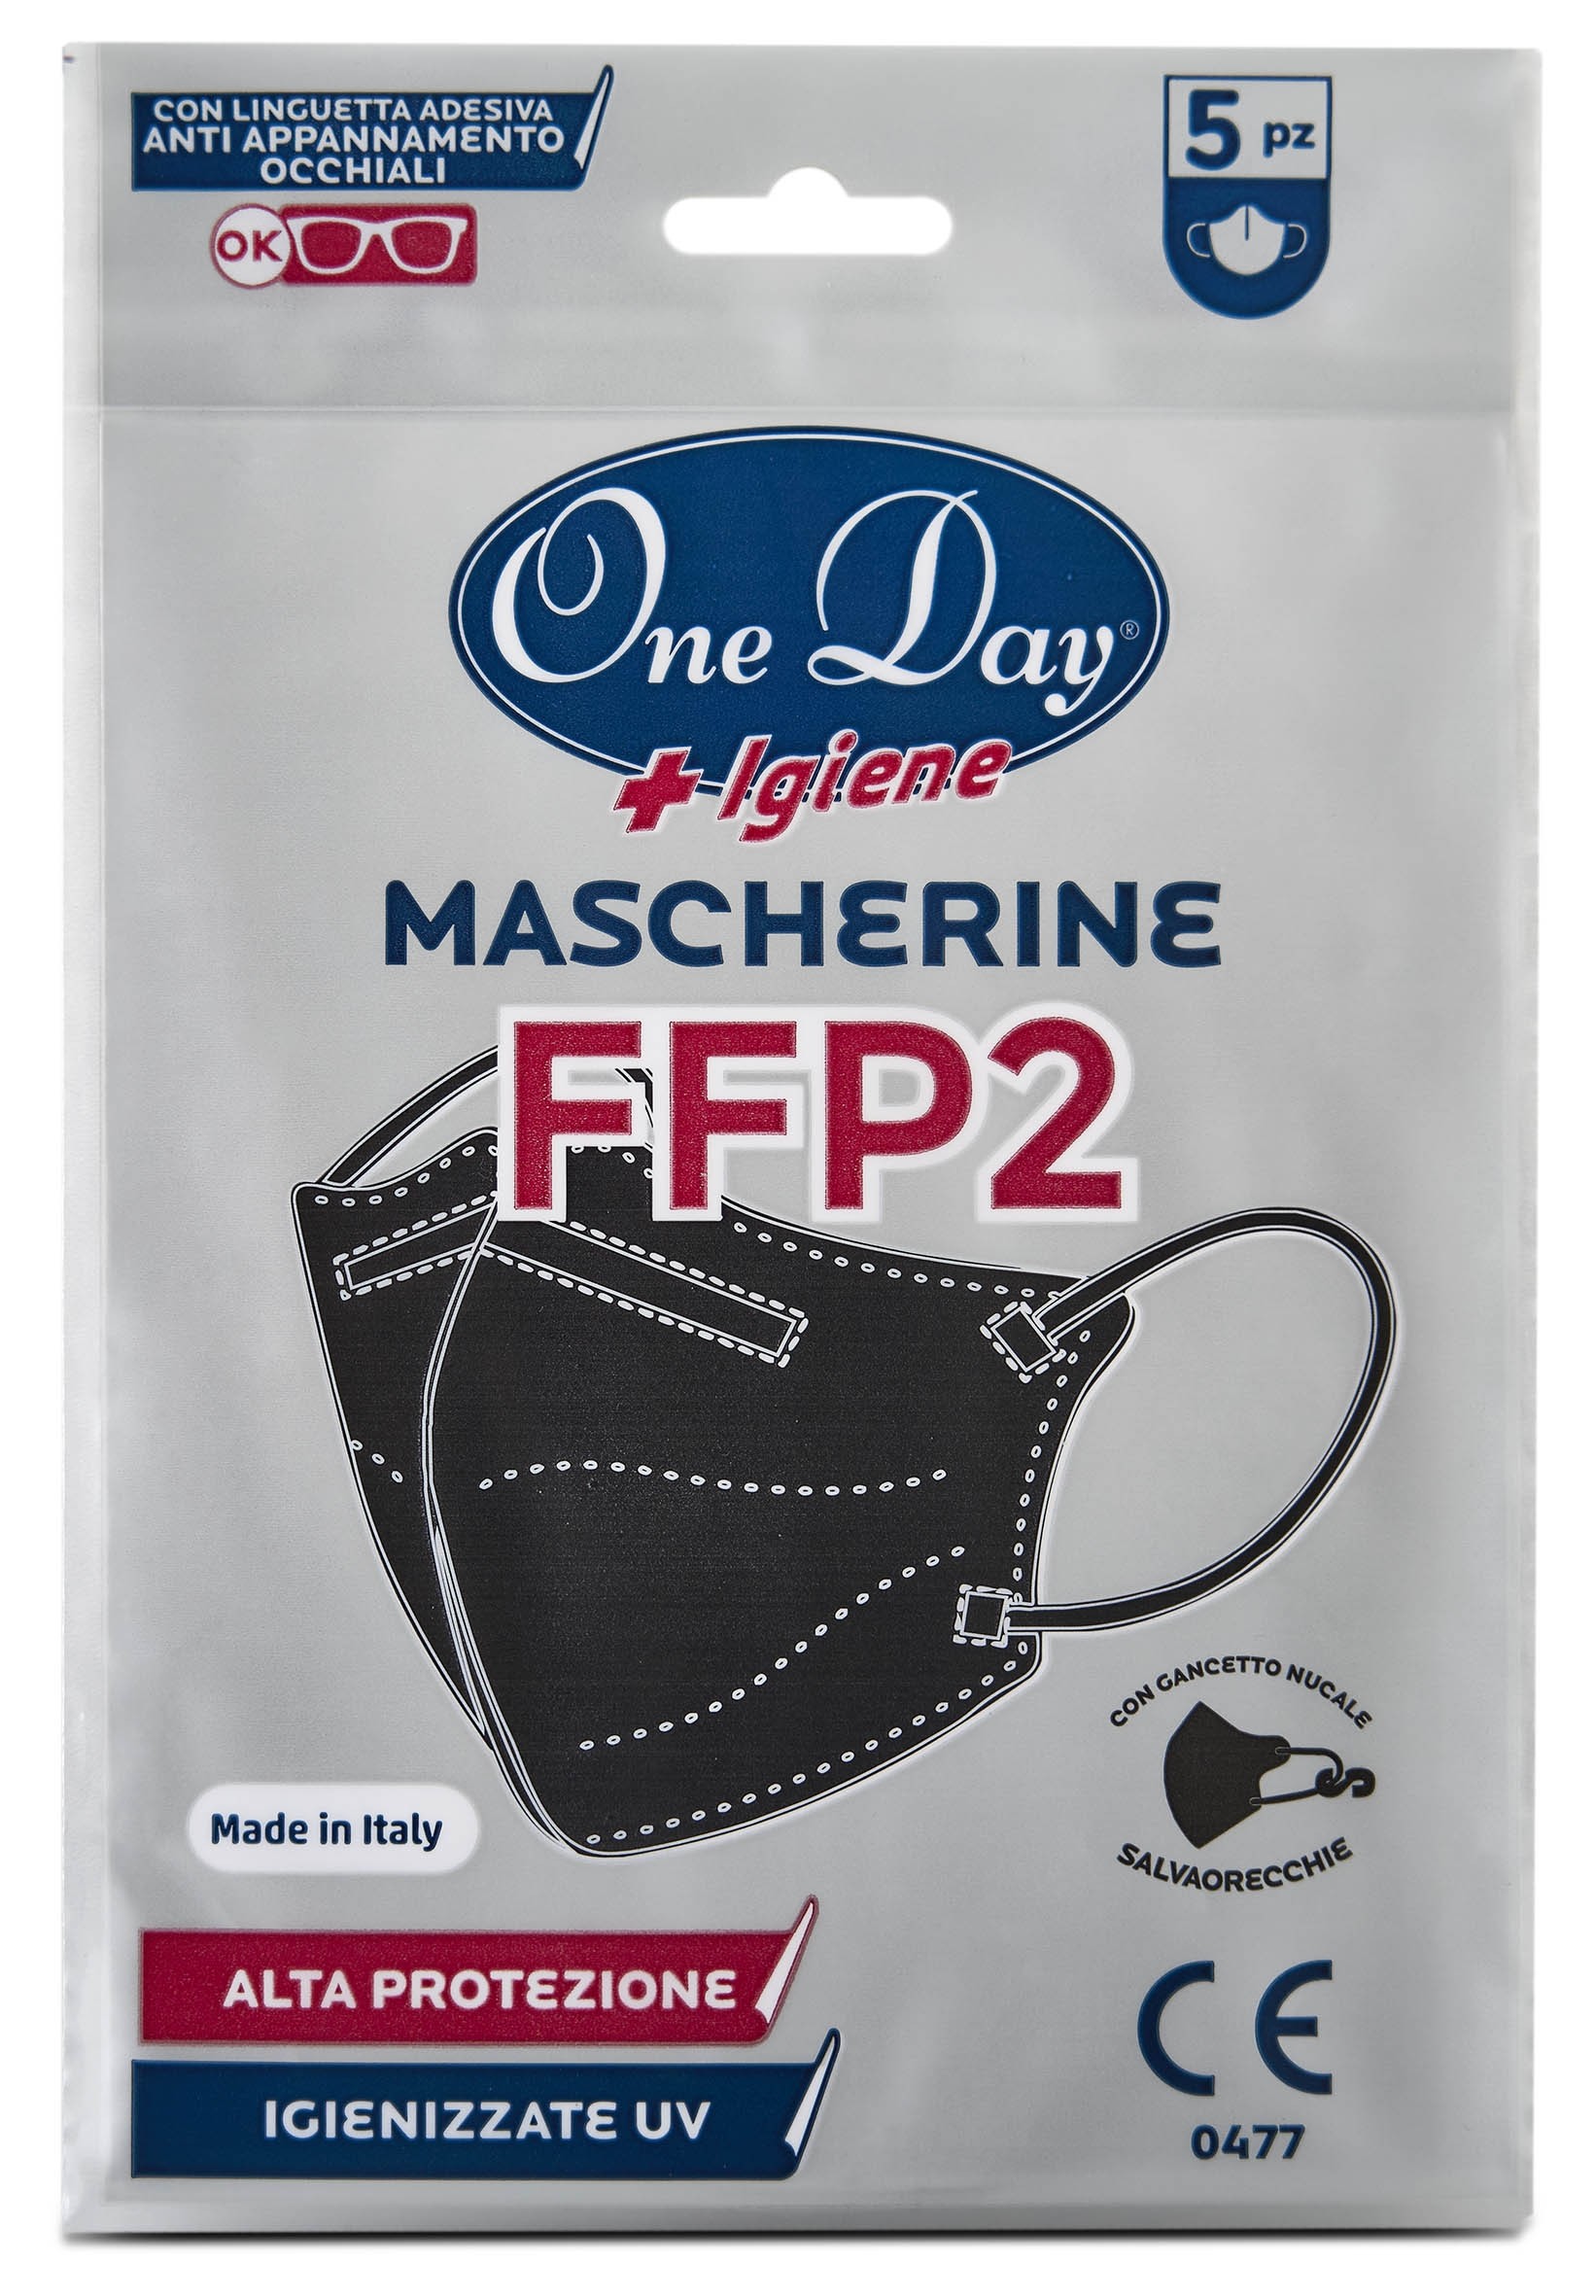 Superfive  Mascherine FFP2 Nere 5 Pezzi - One day igiene